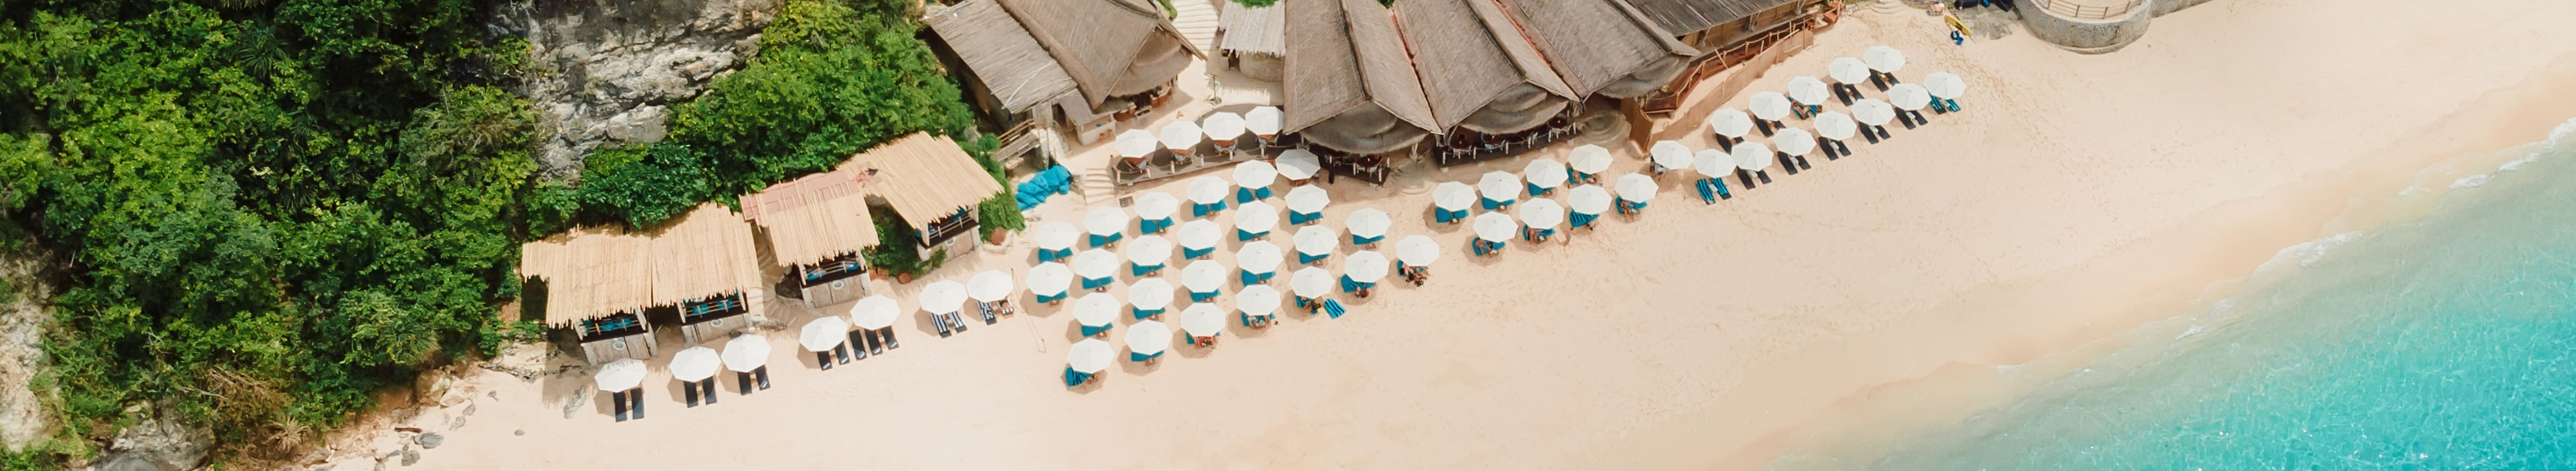 Sandstrand an einem Hotel auf Bali